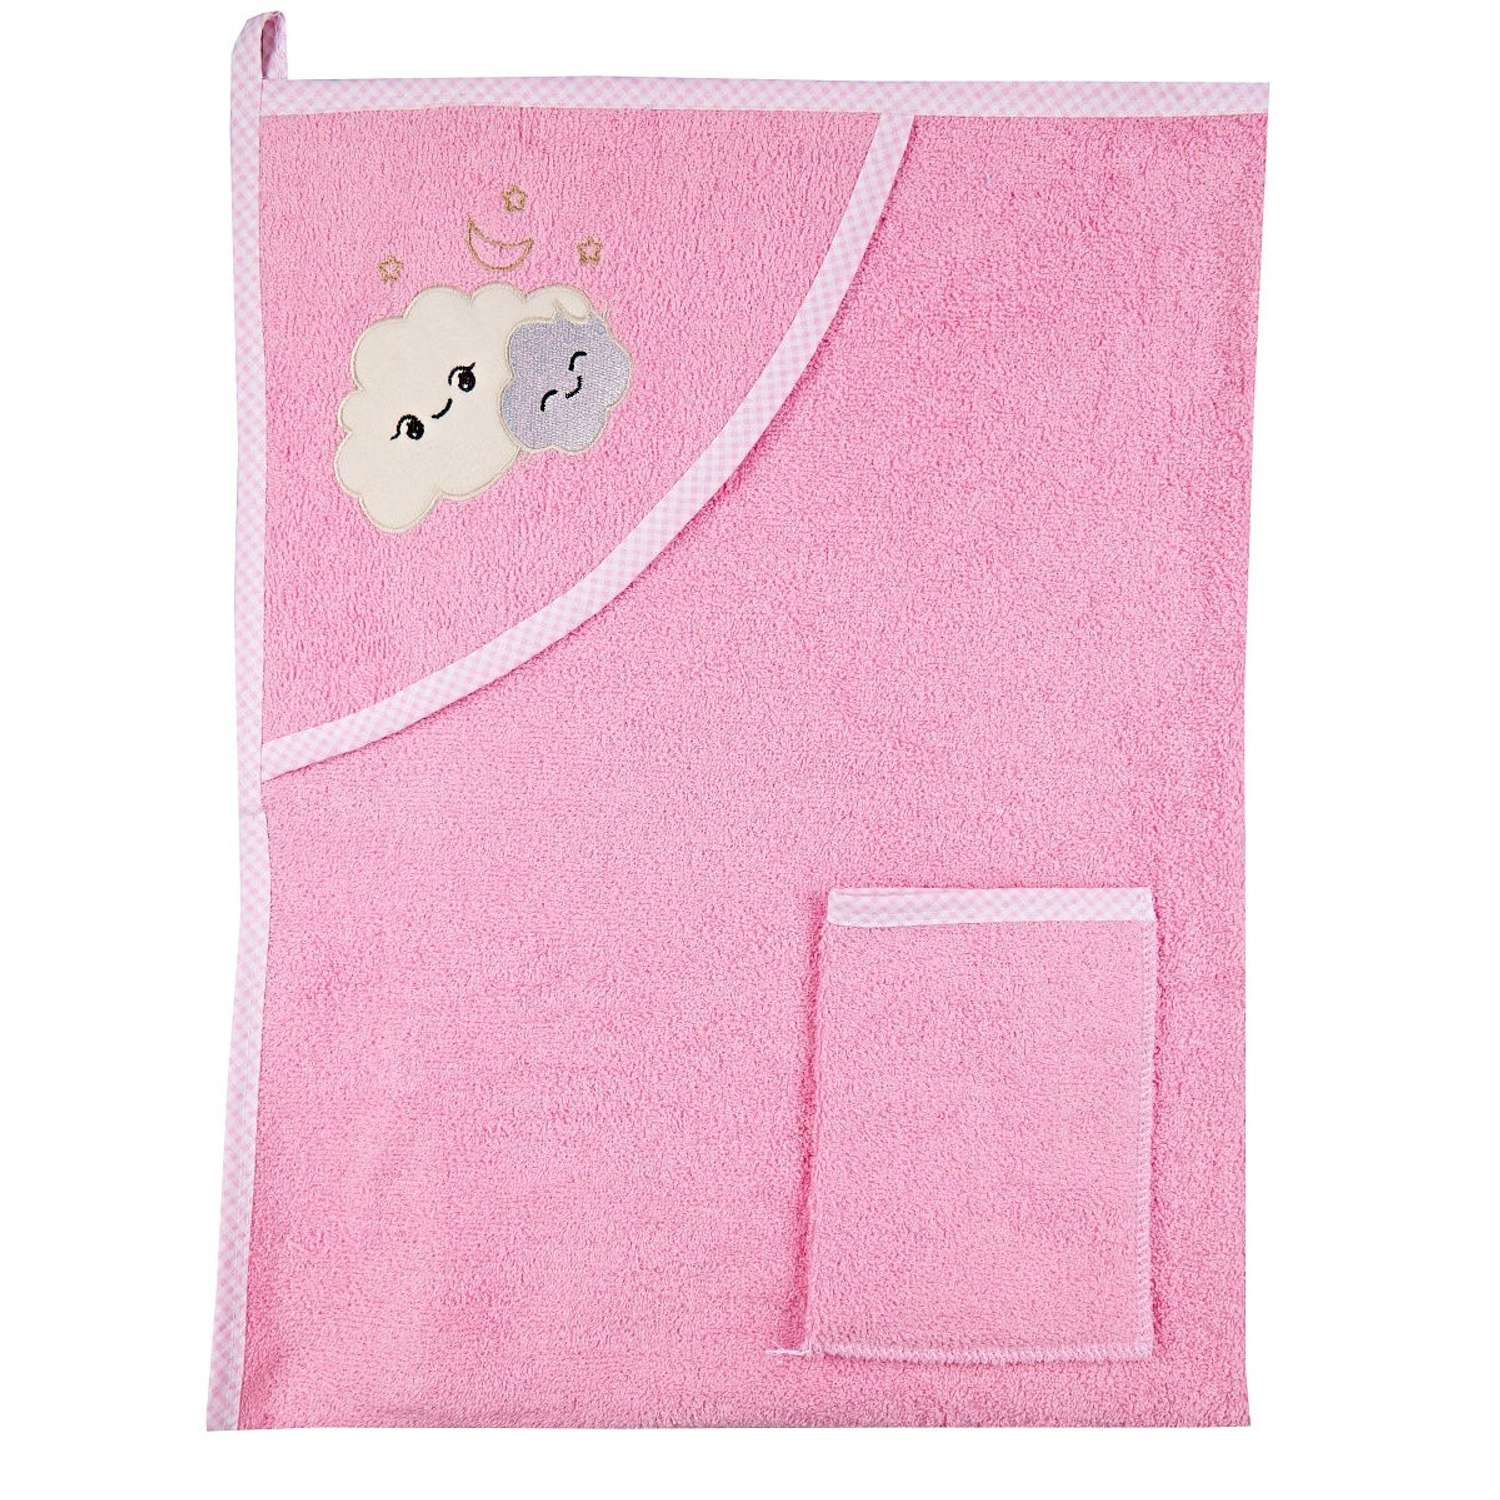 Набор для купания малыша M-BABY махровое полотенце с уголком и рукавичка 100% хлопок мордочка/розовый - фото 1